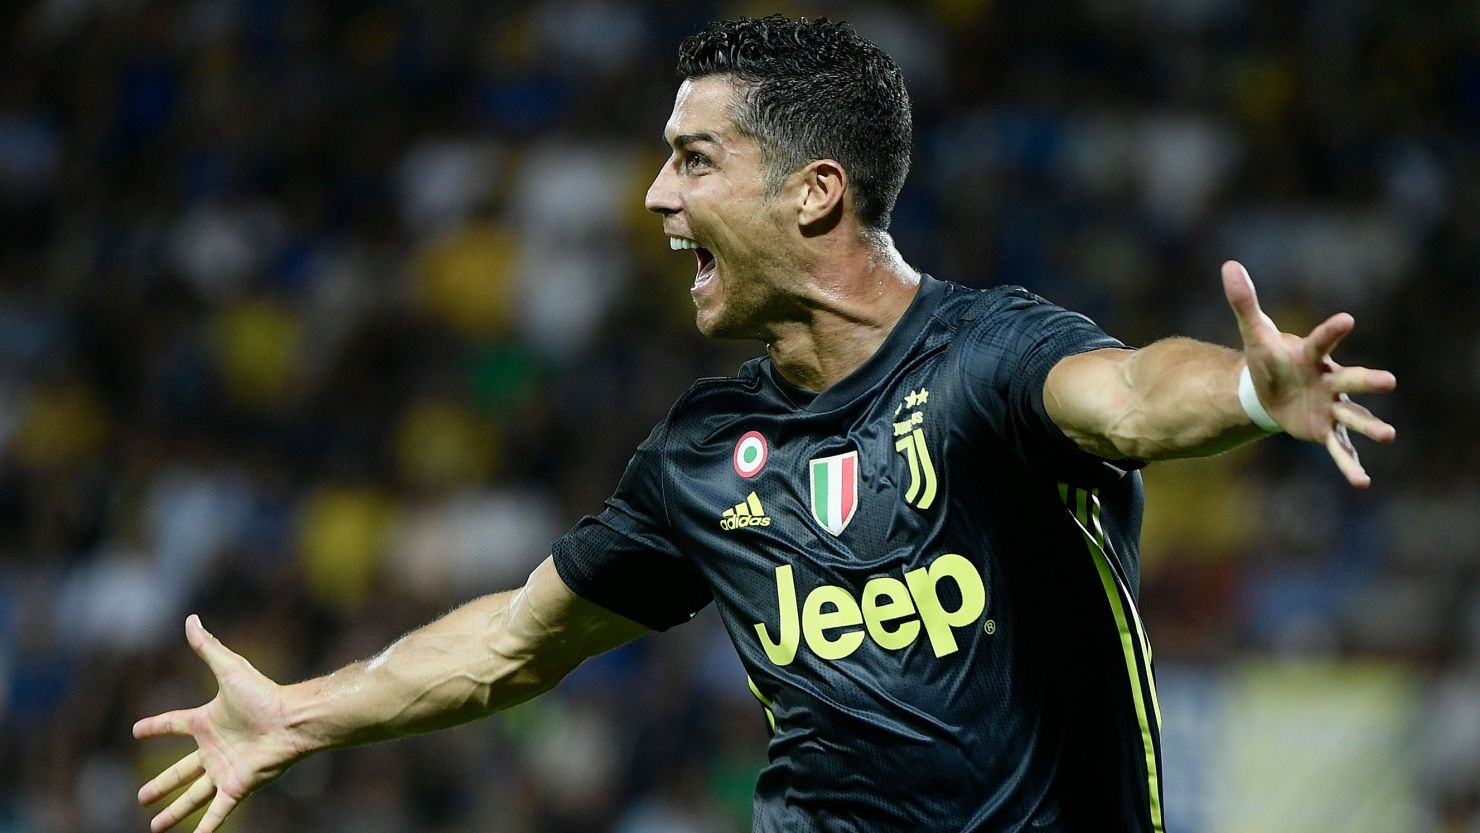 Ronaldo celebrates after scoring against Frosinone.